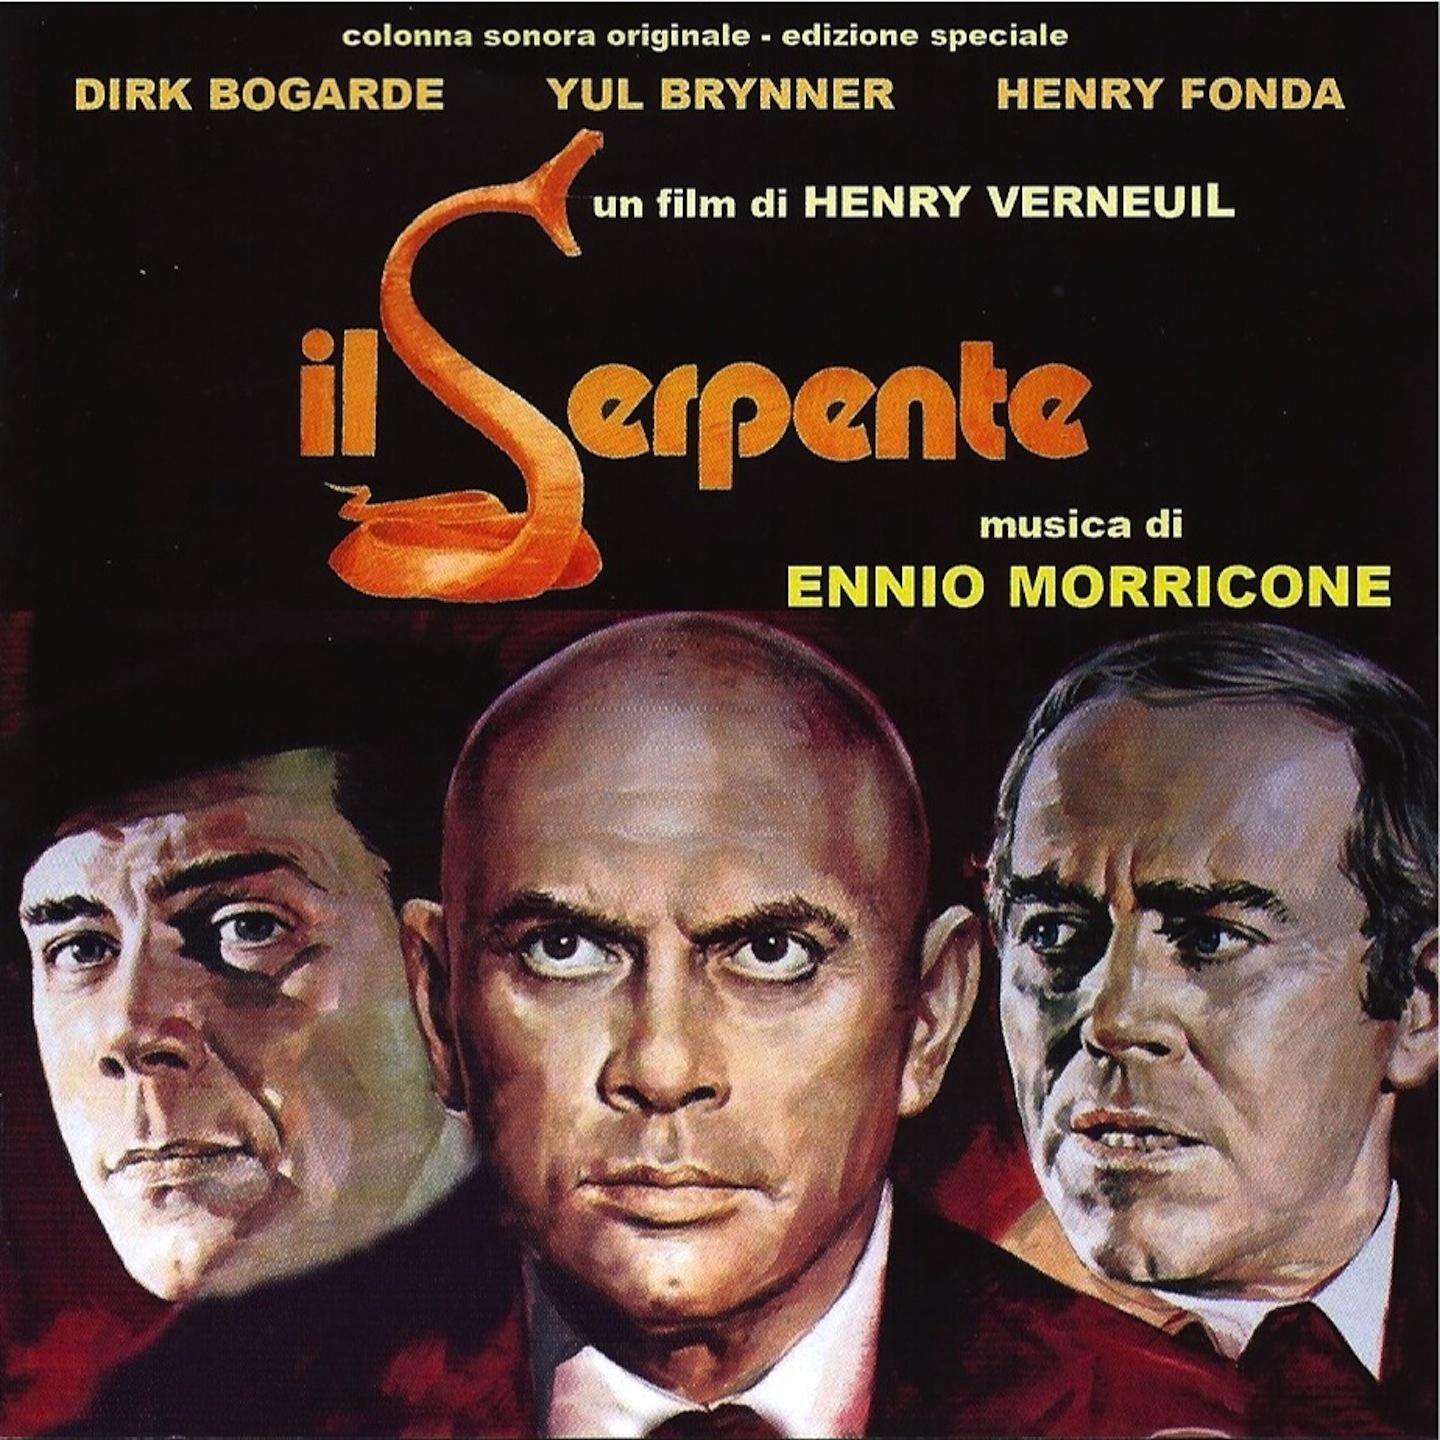 Il serpente (Original Motion Picture Soundtrack)